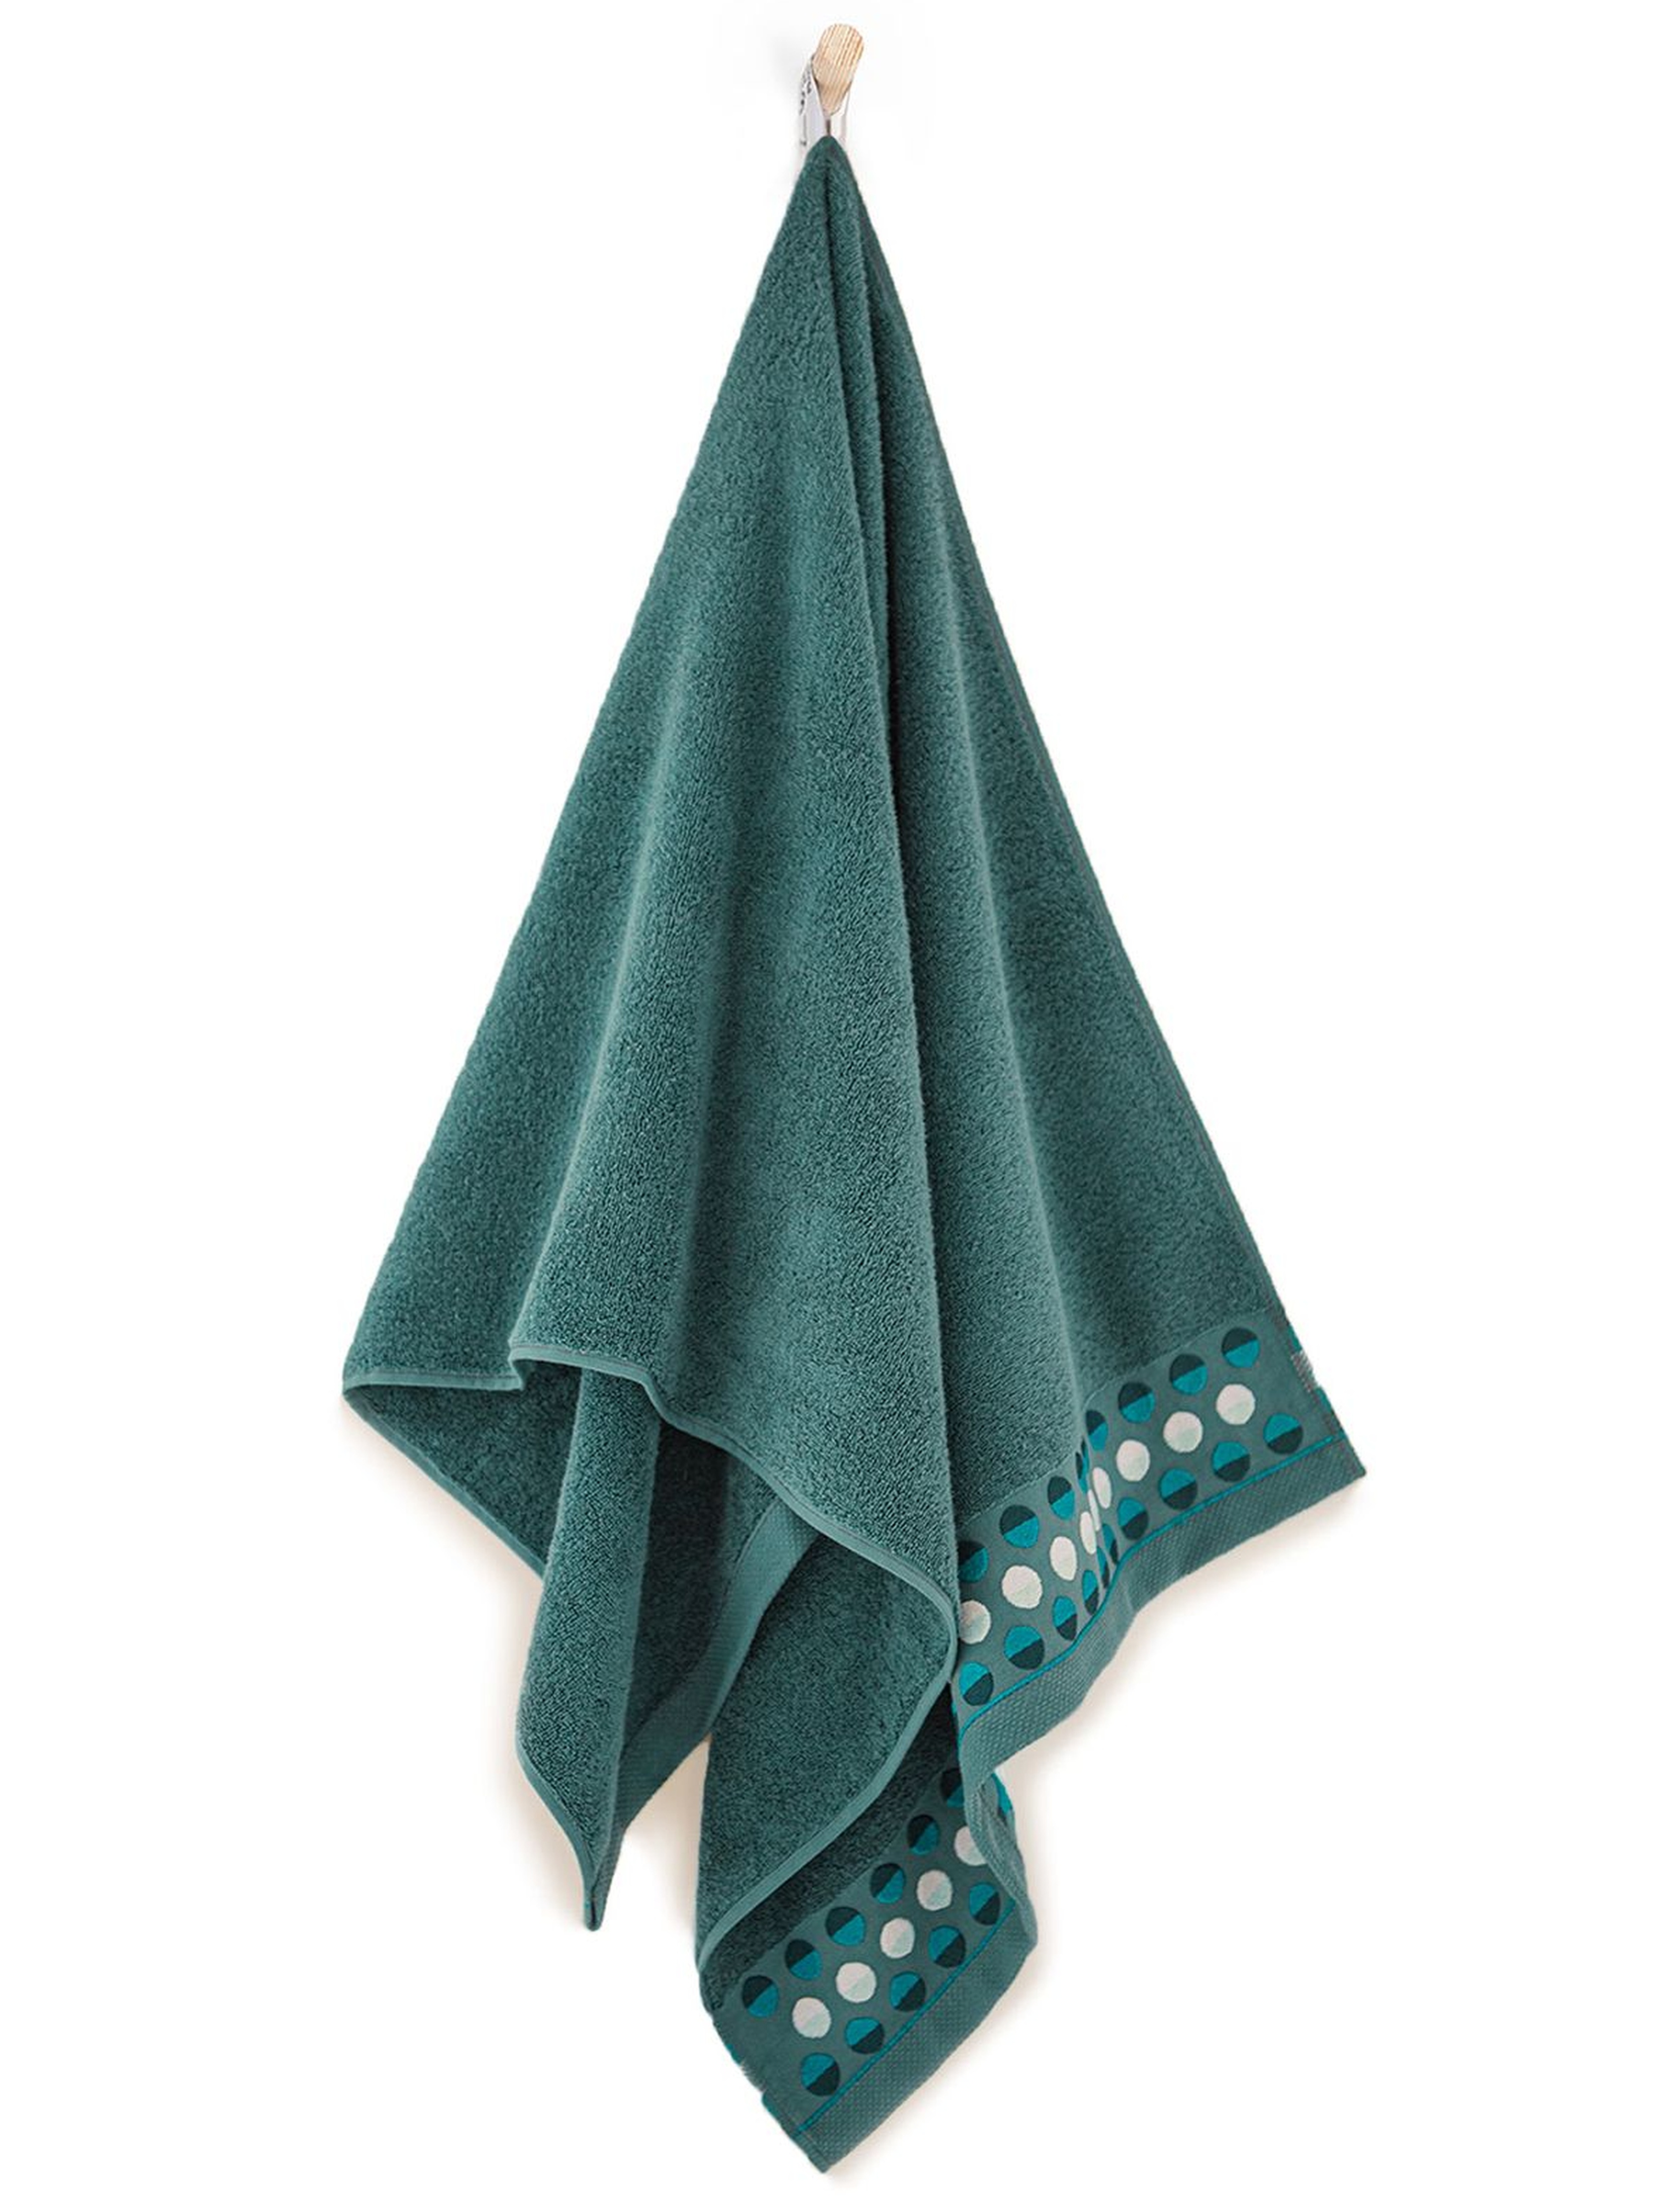 Ręcznik z bawełny egipskiej Zen bukszpan 50x90cm